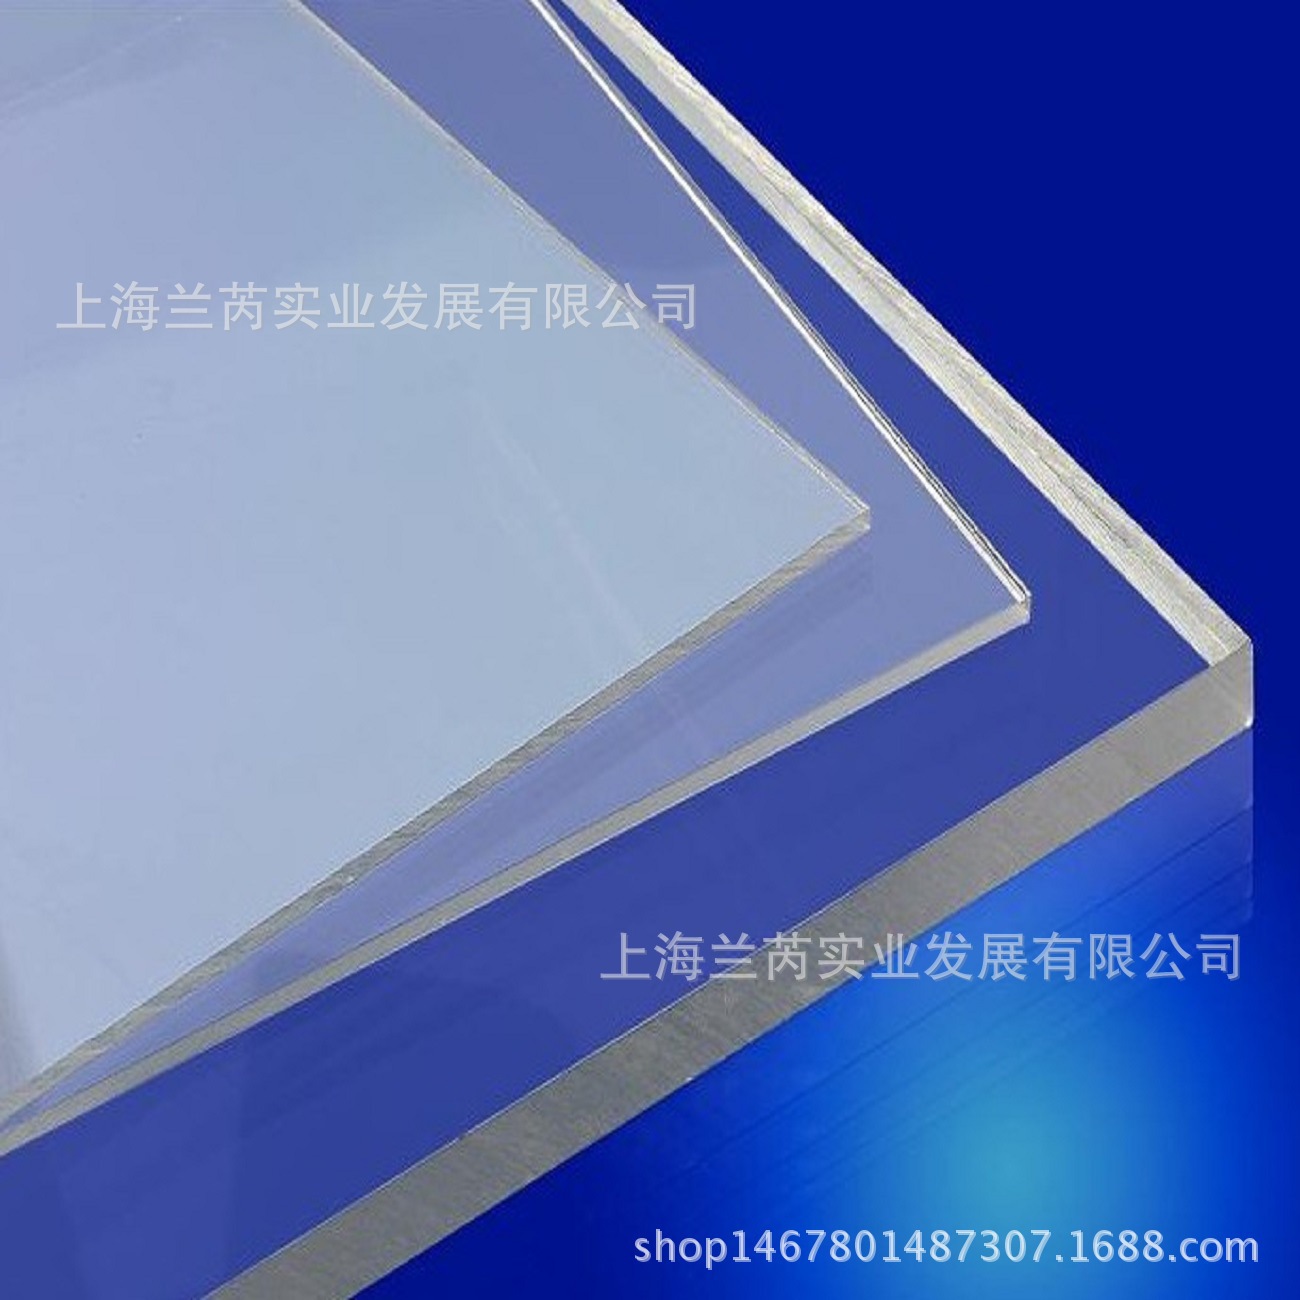 厂家供应直销pc蓝球板 体育器材 室内外篮球板 透明pc耐力板印刷